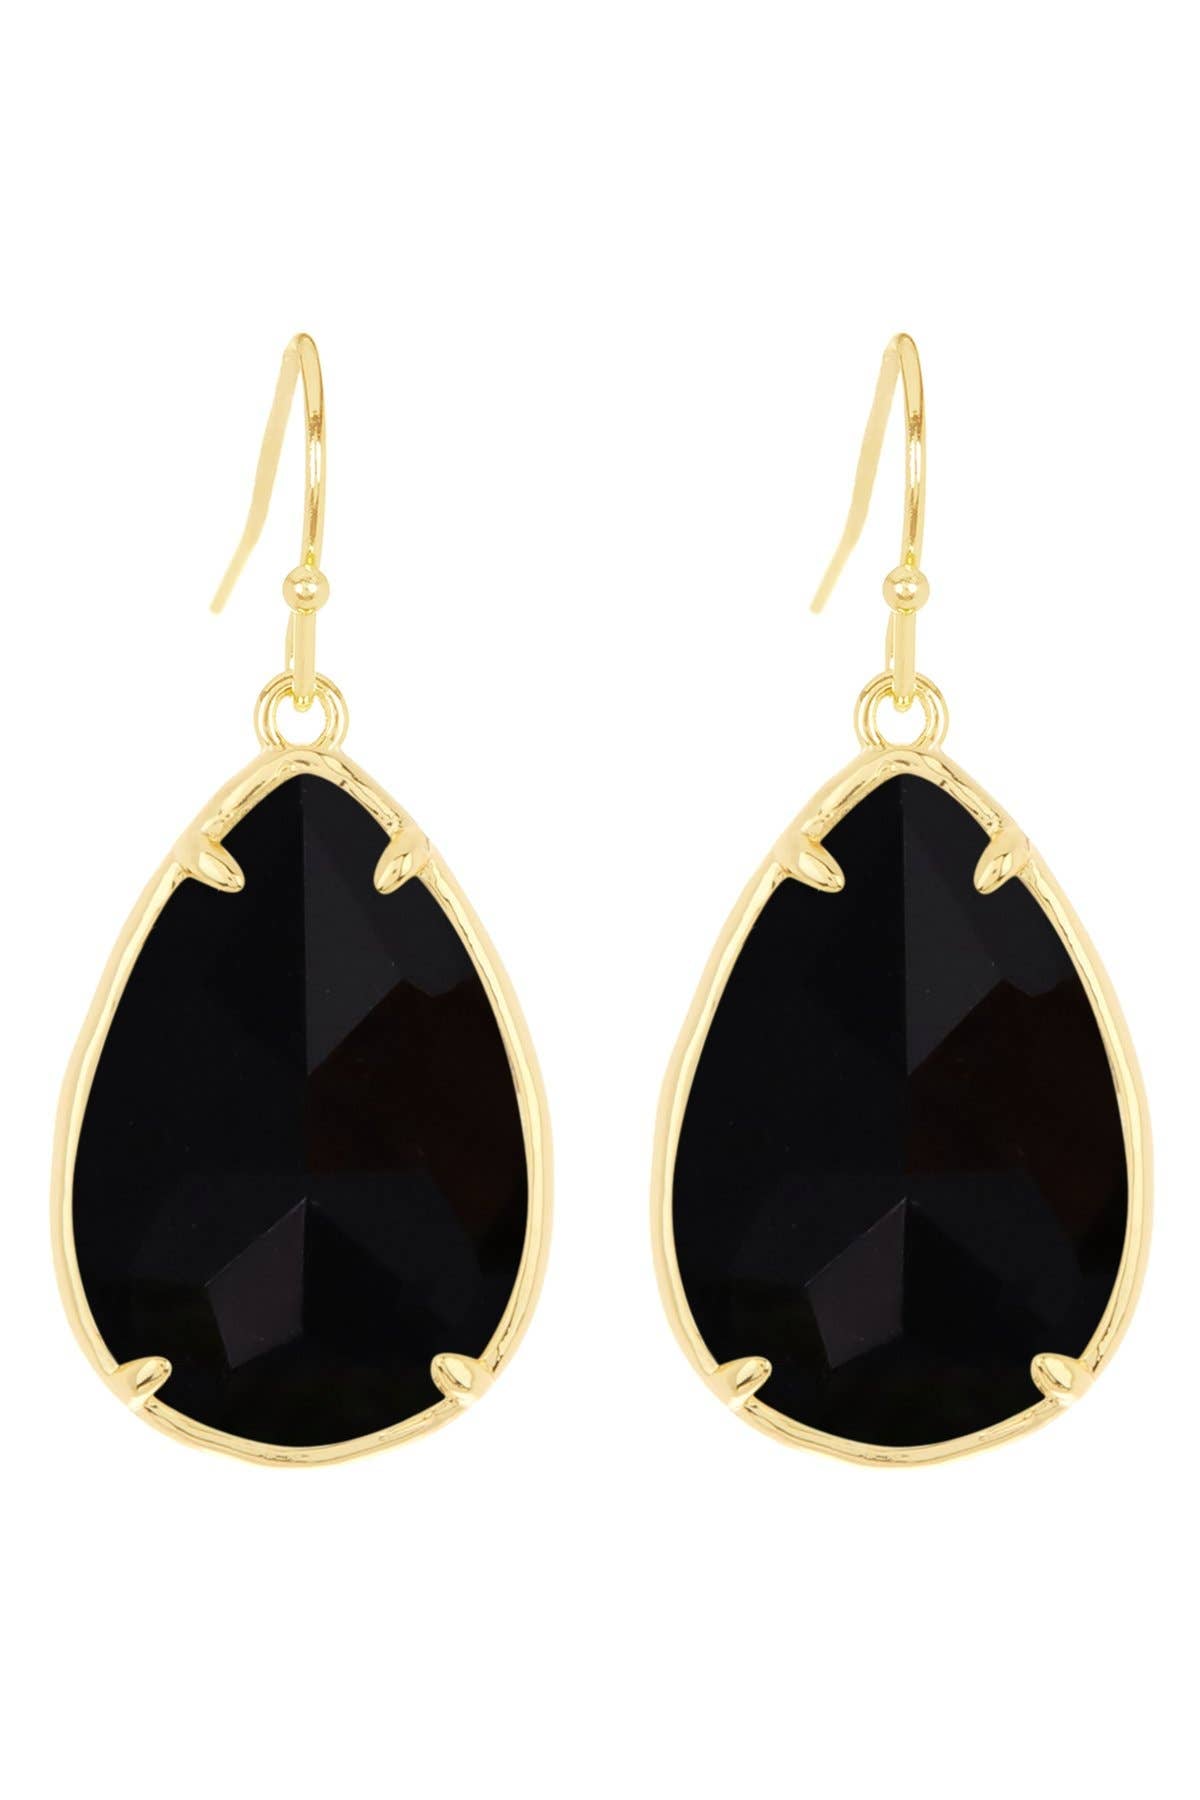 14k Vermeil & Black Onyx Pear Cut Earrings - VM